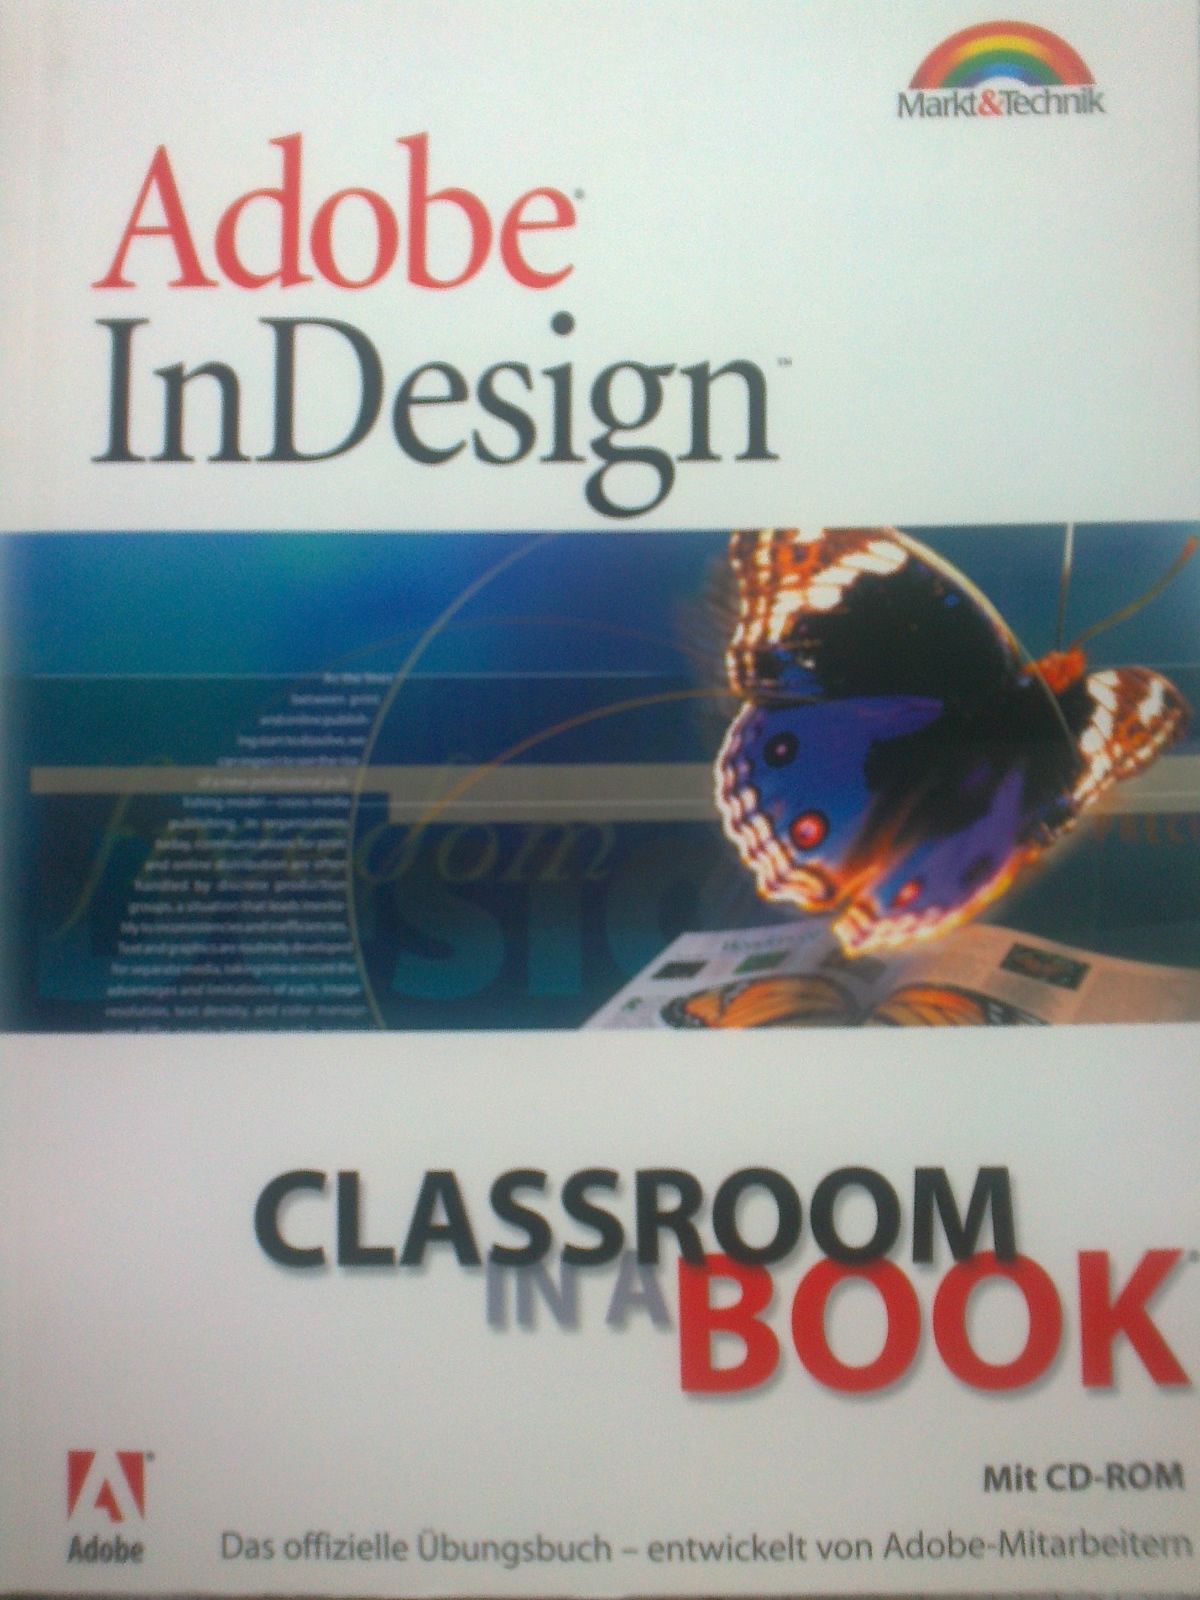 InDesign - Classroom in a Book Das offizielle Übungsbuch - entwickelt von Adobe- Mitarbeitern